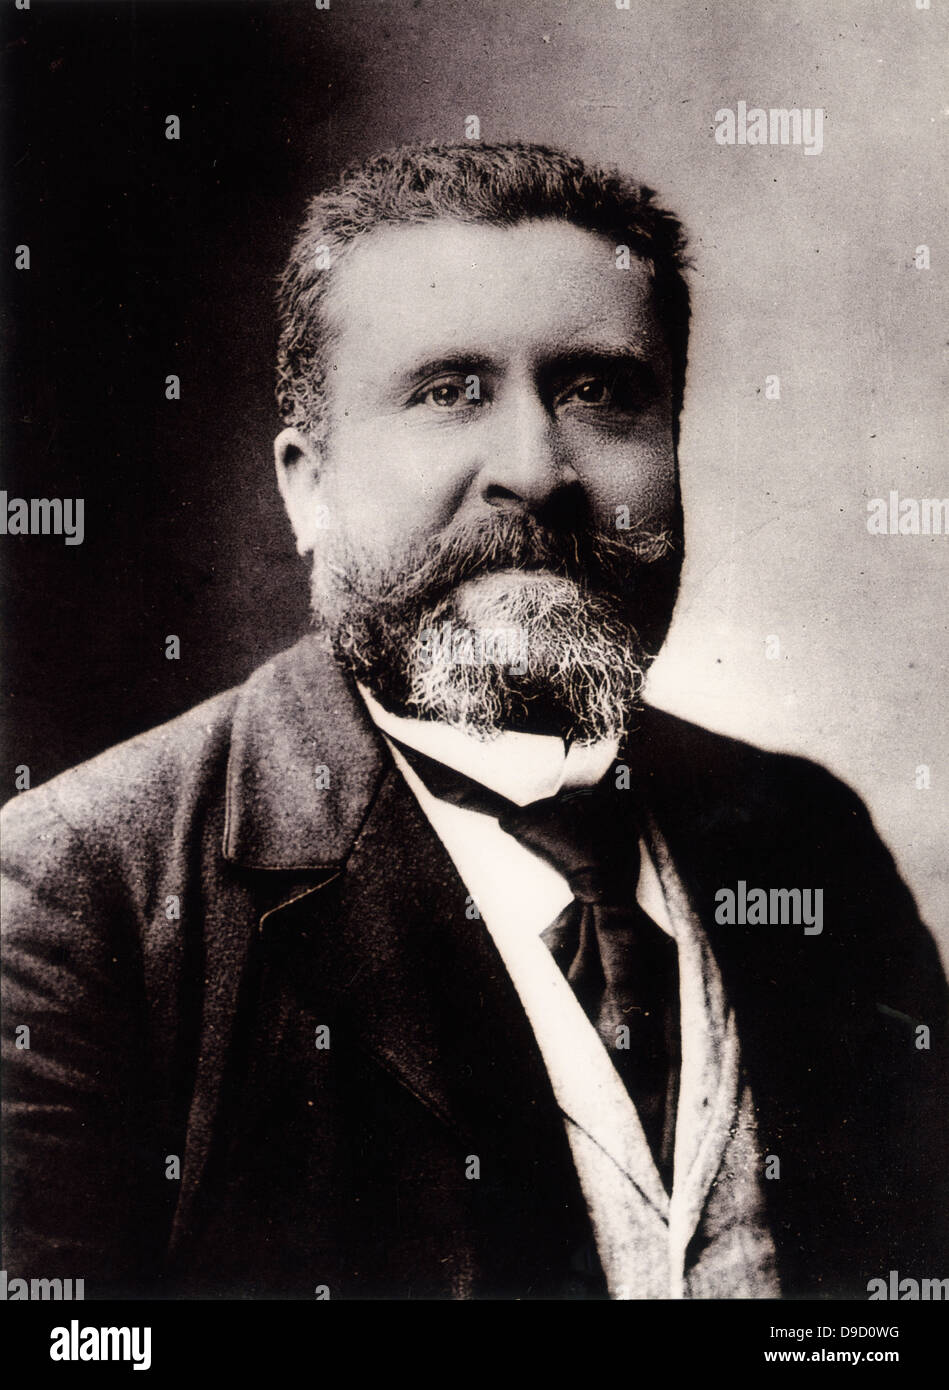 Jean Jaurès (1859-1914), französischer Politiker und Pazifist. Wurde Führer der französischen Sozialistischen Partei im Jahre 1902. 31. Juli 1914 ermordet. Stockfoto